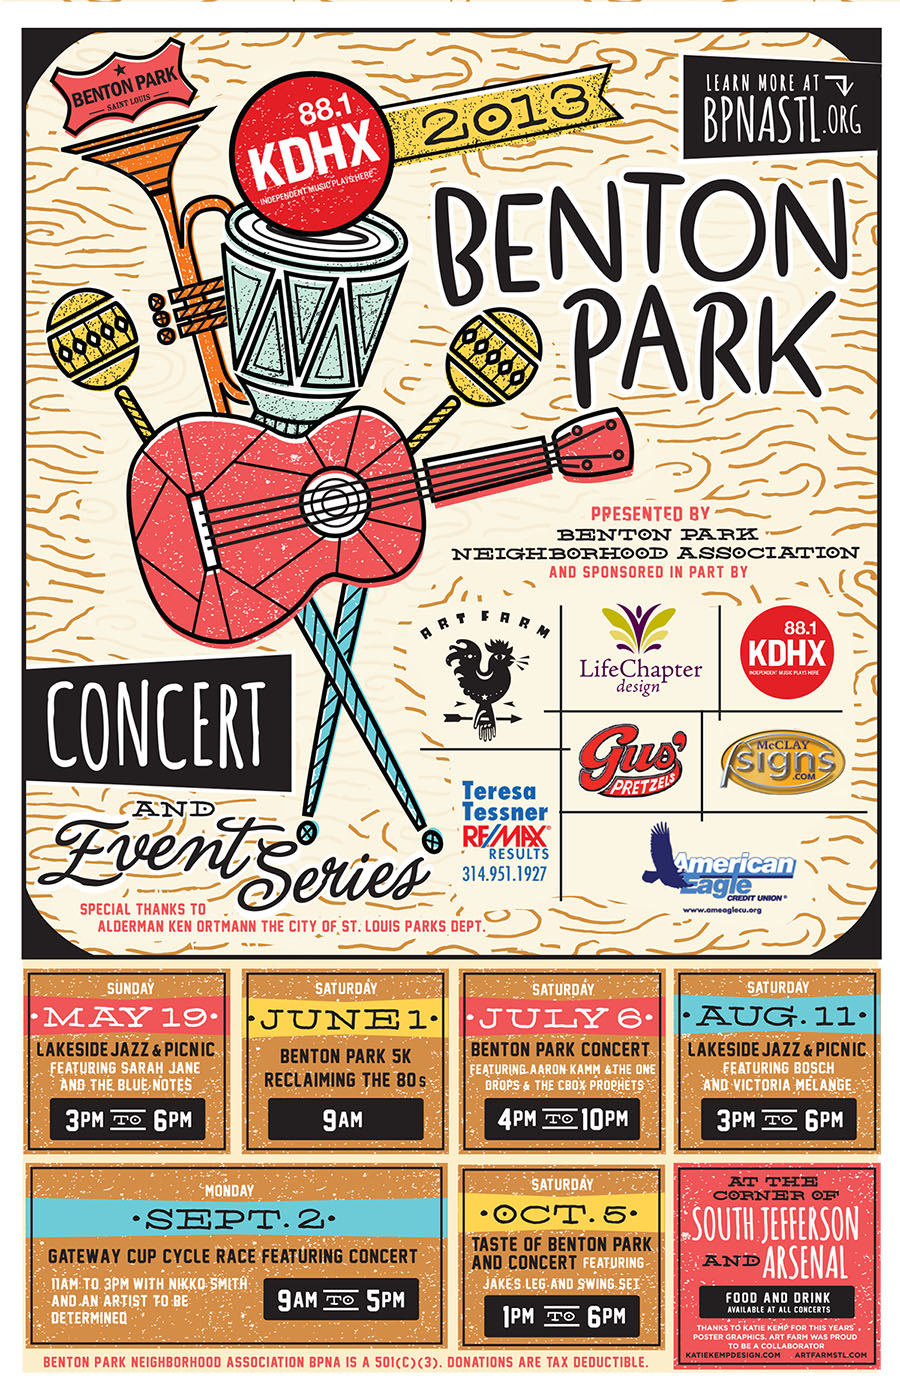 Benton Park Concert & Event Series by katie kemp hileman on Dribbble